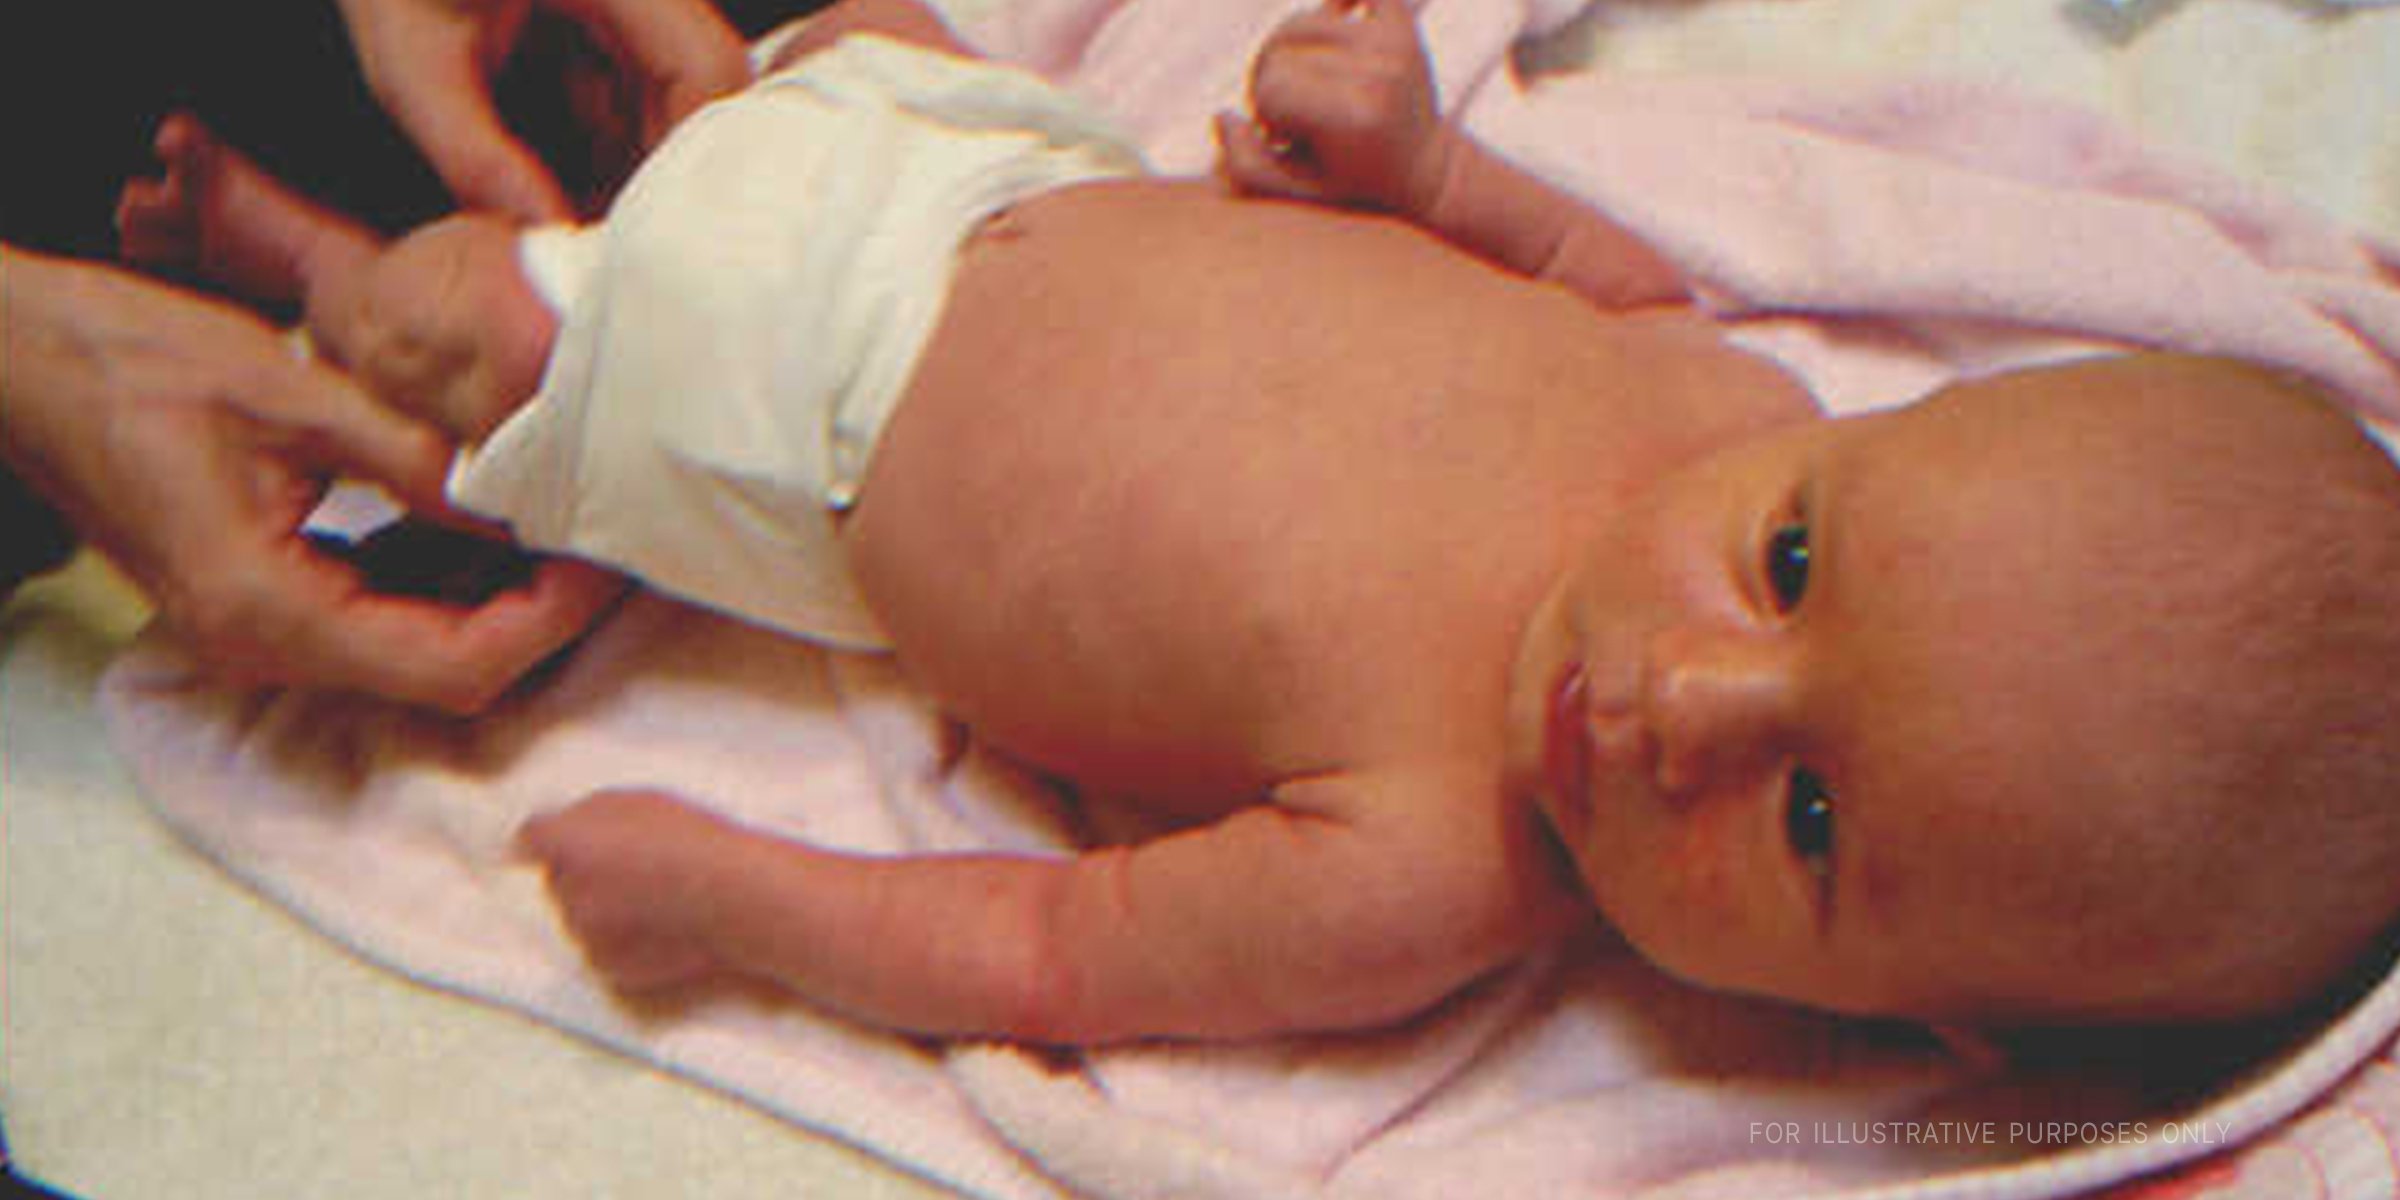 Ein liegendes Baby | Quelle: Flickr / Sellers Patton (CC BY 2.0)